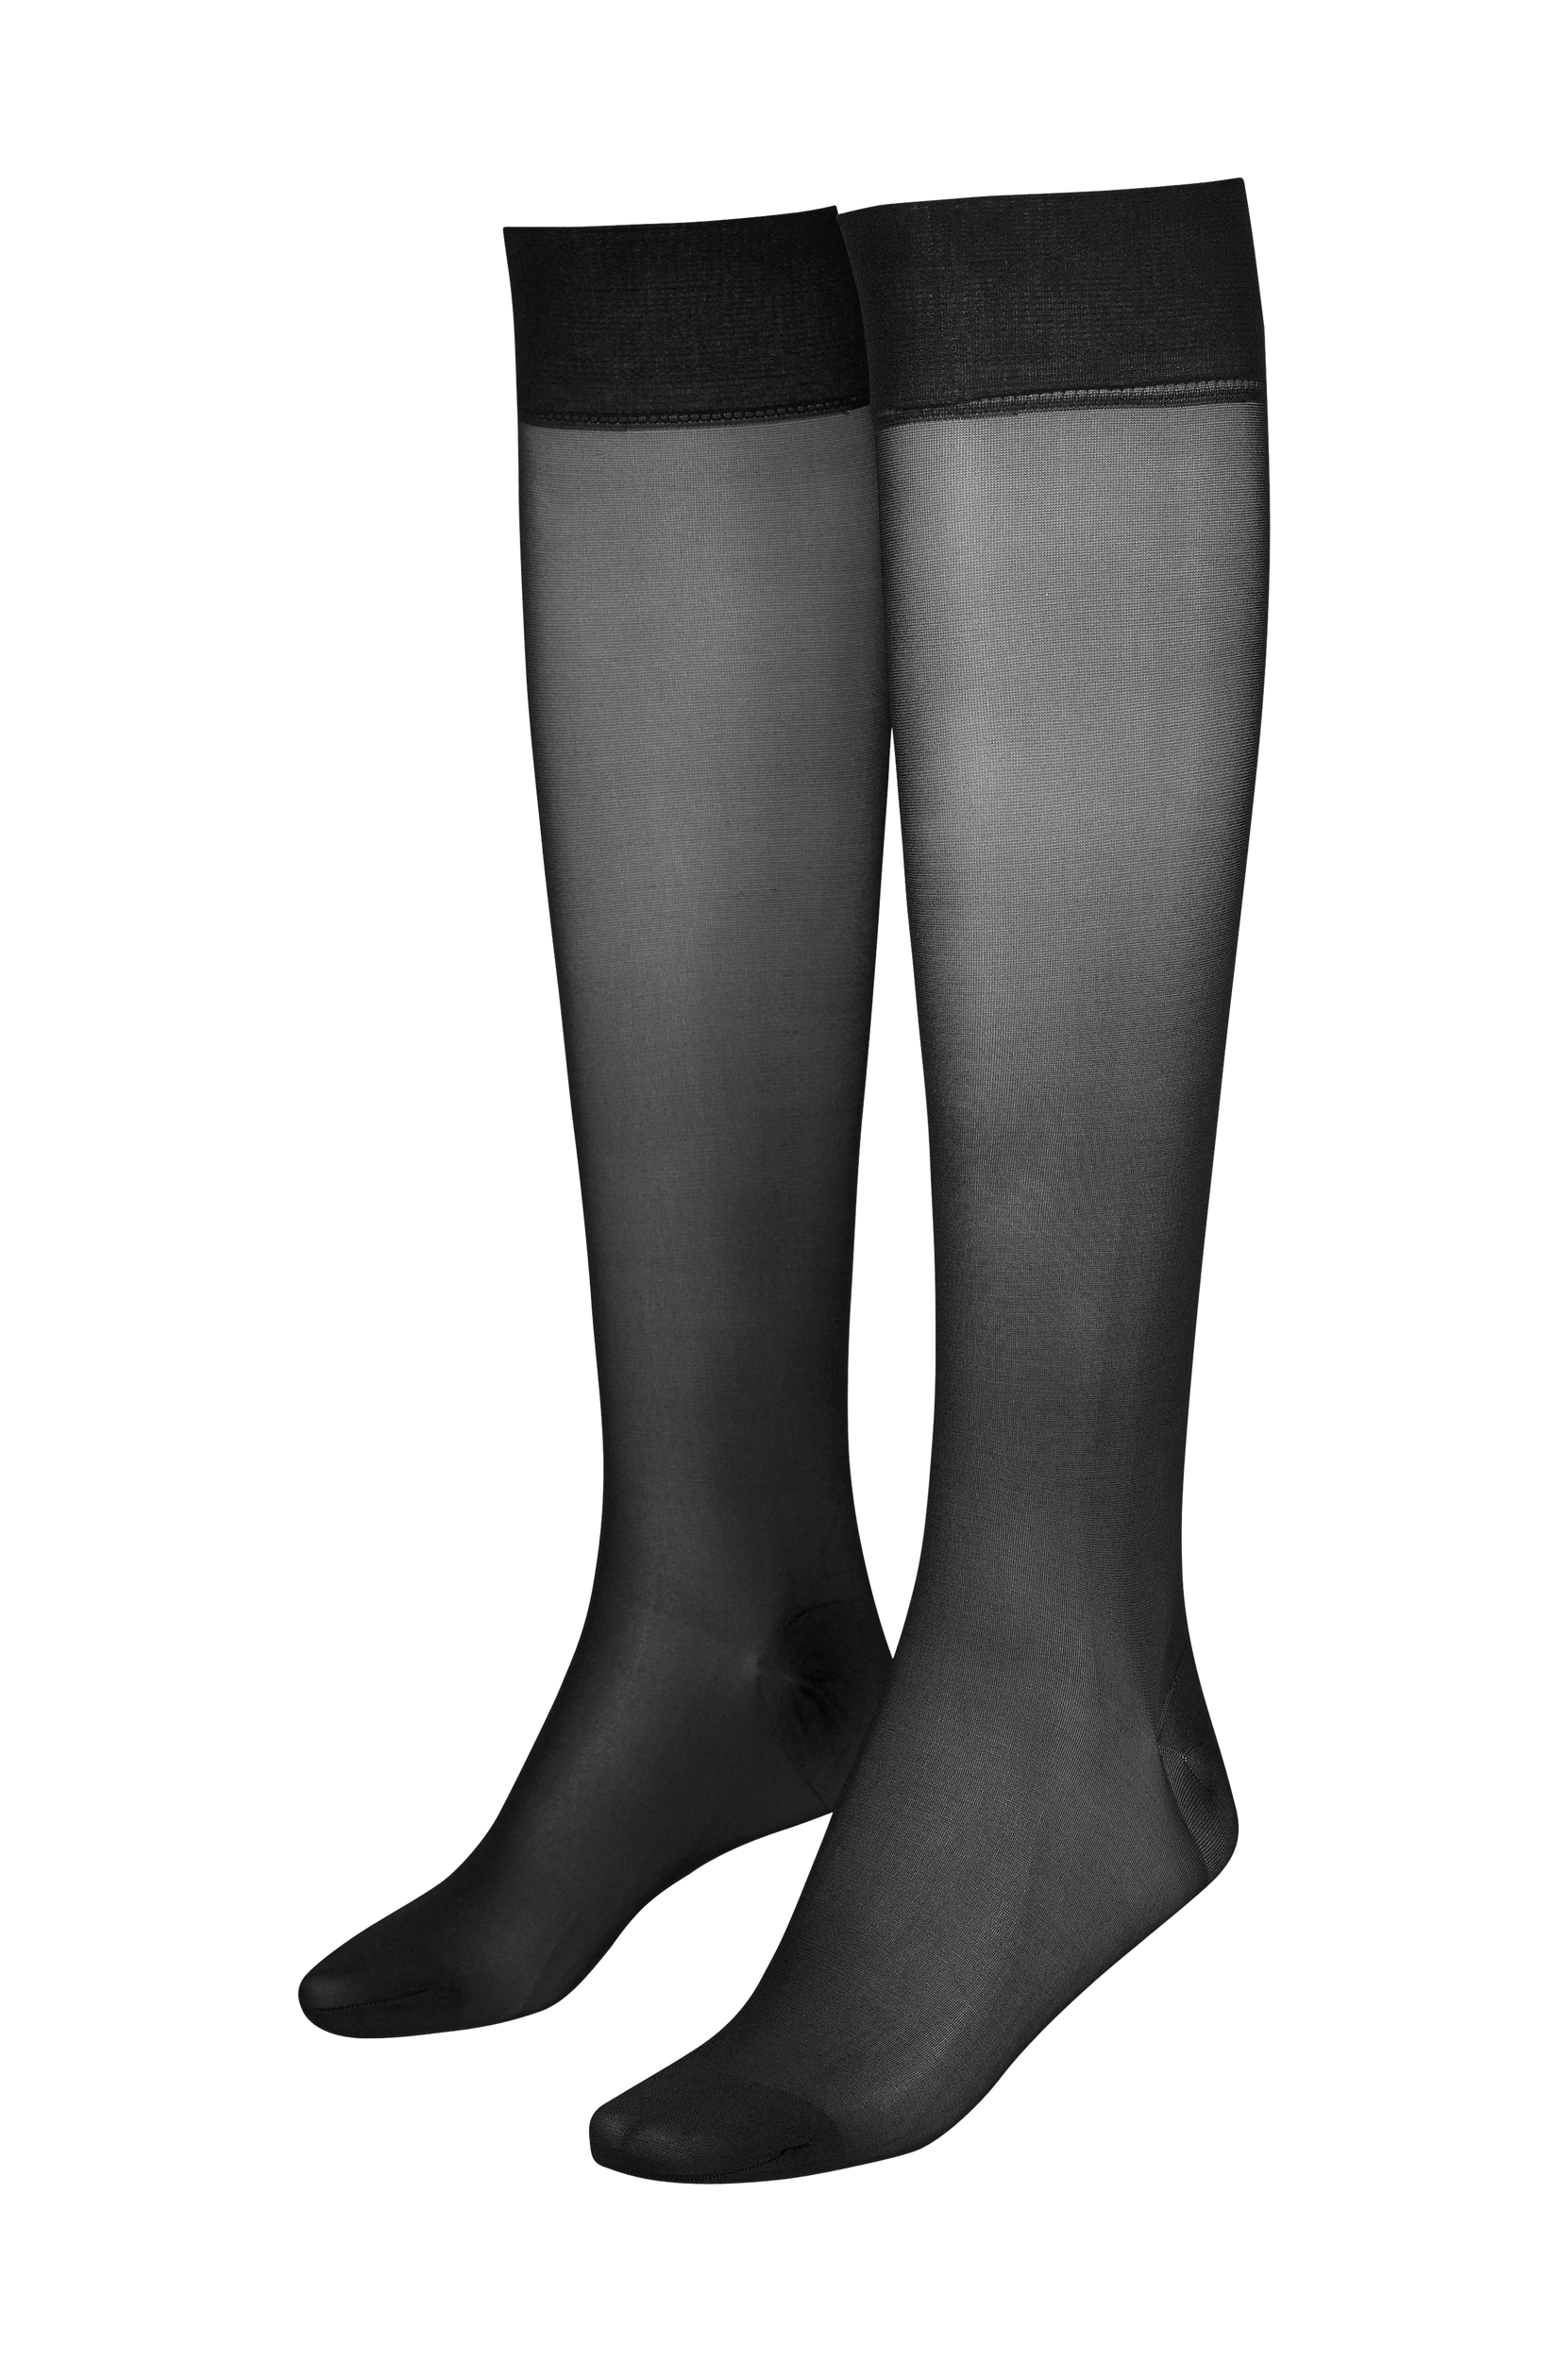 Nogen som helst Pygmalion Furnace Vogue - Knæstrømper Support Knee 40 den - Natur - Sokker - Tøj til kvinder  (29116165)